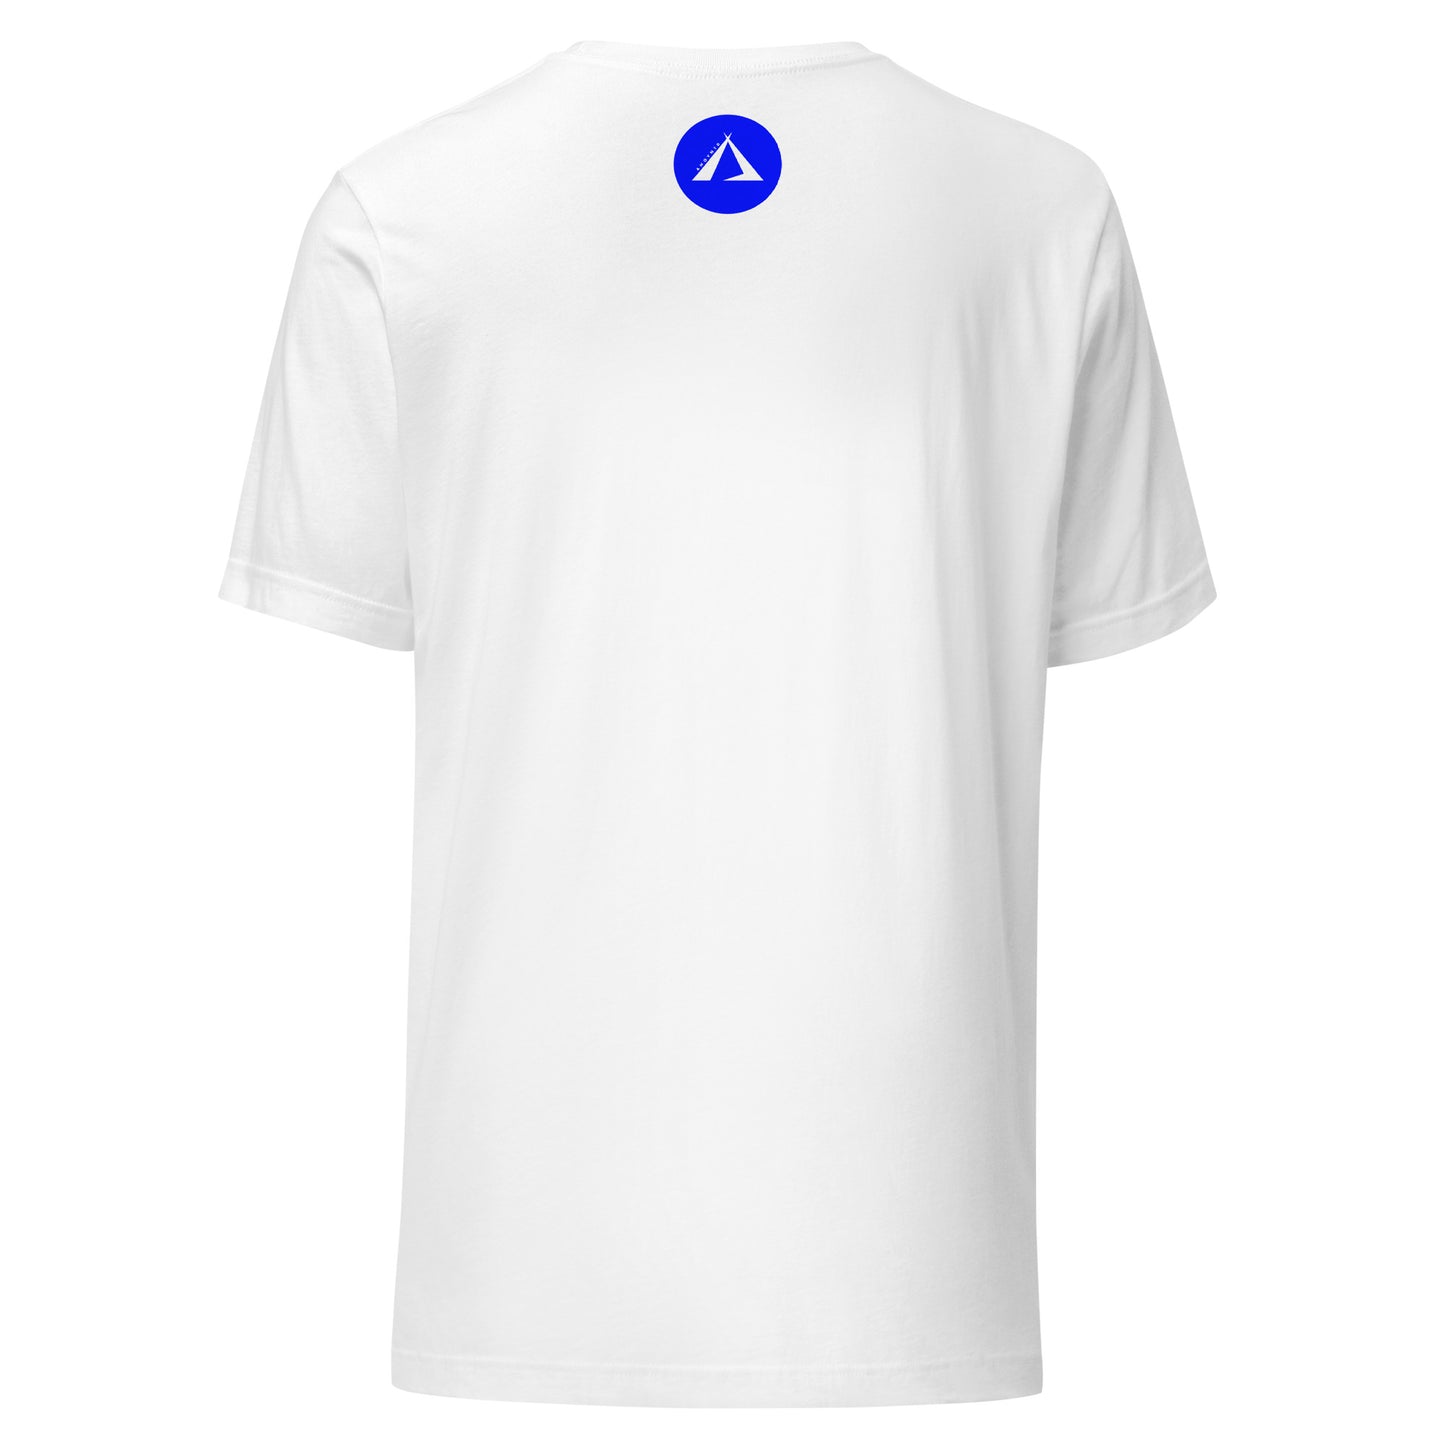 ANOYNTD LittleTeePee (Bl) Unisex t-shirt